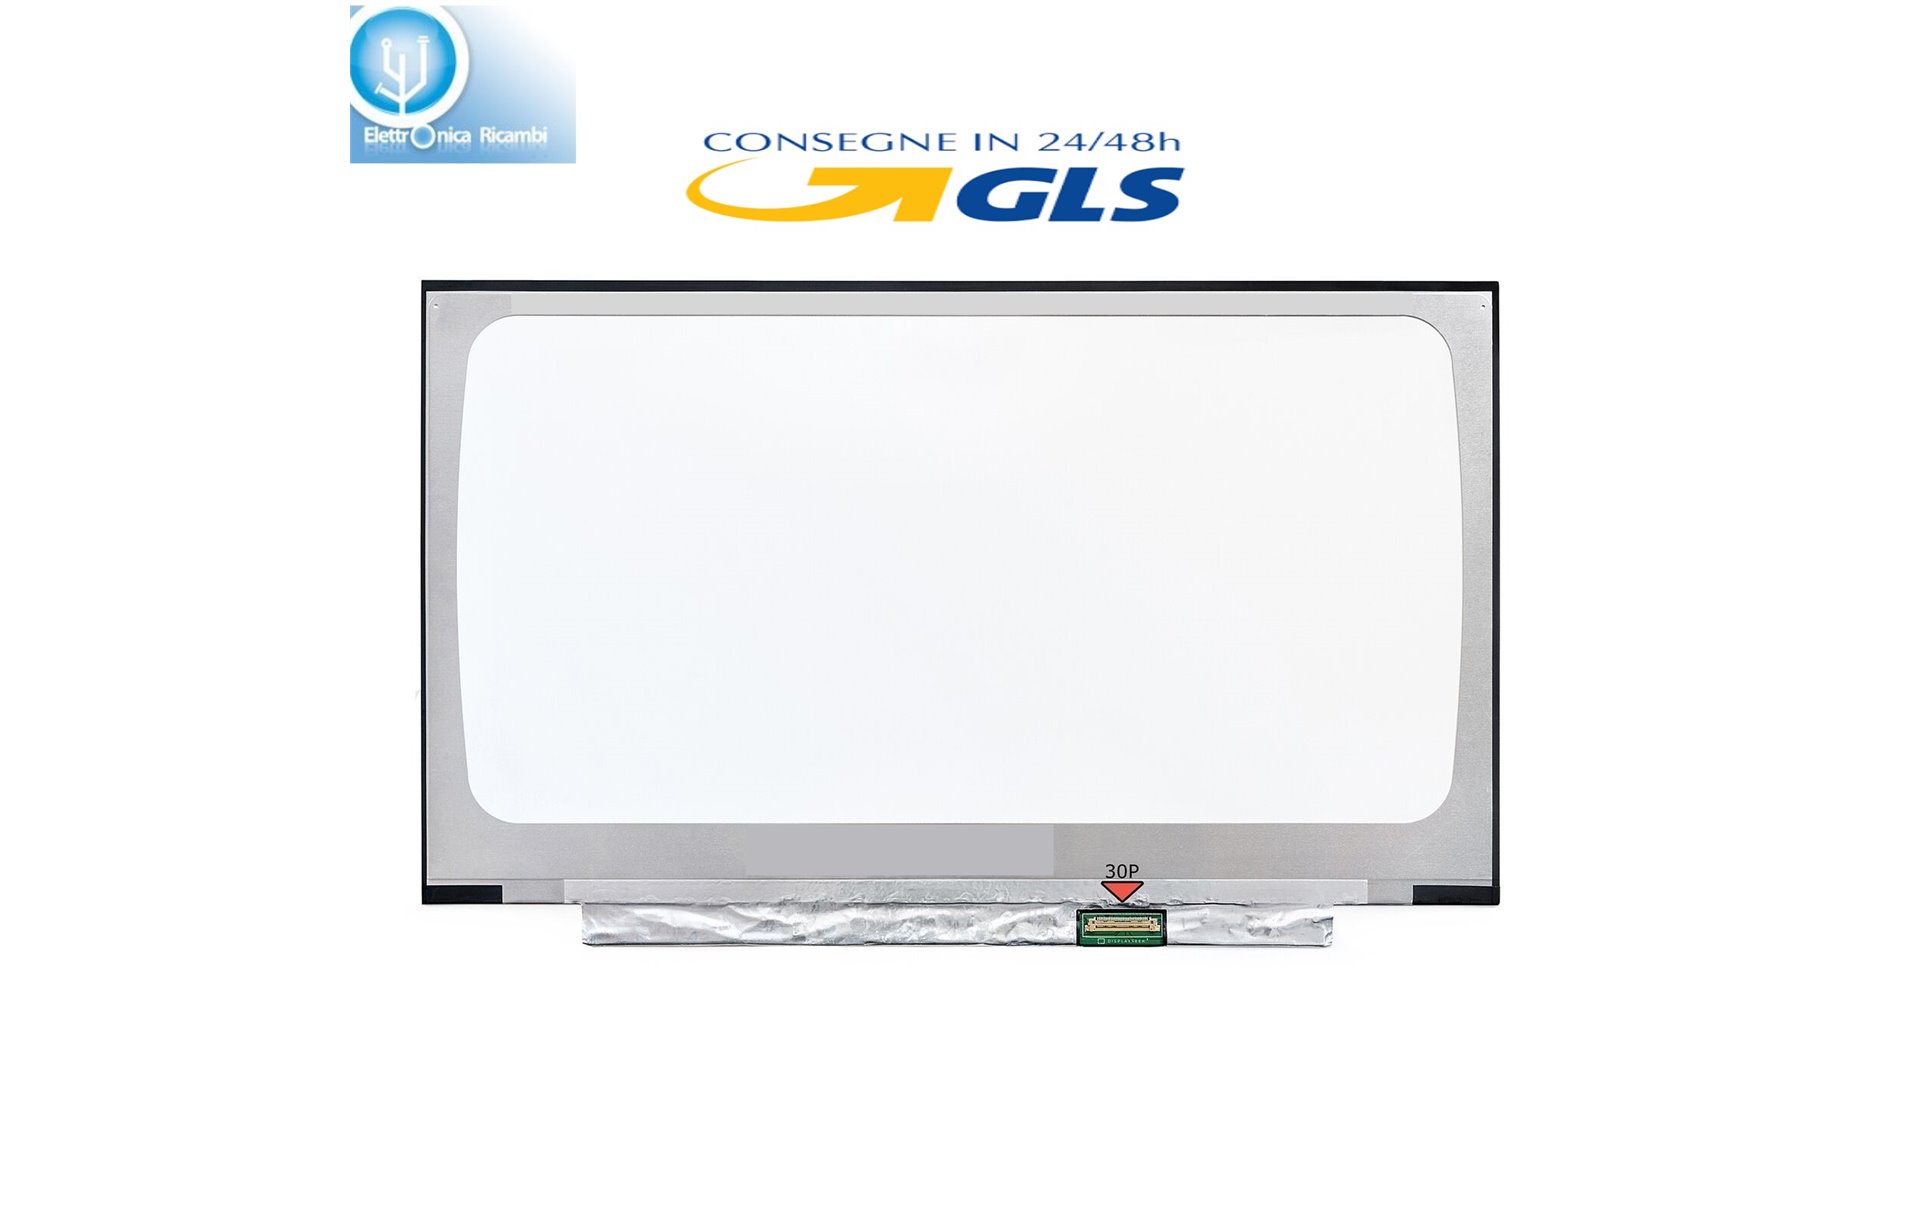 Display lcd schermo ASUS R410 SERIES 14" led Slim 30 pin wxga  (1920X1080) IPS